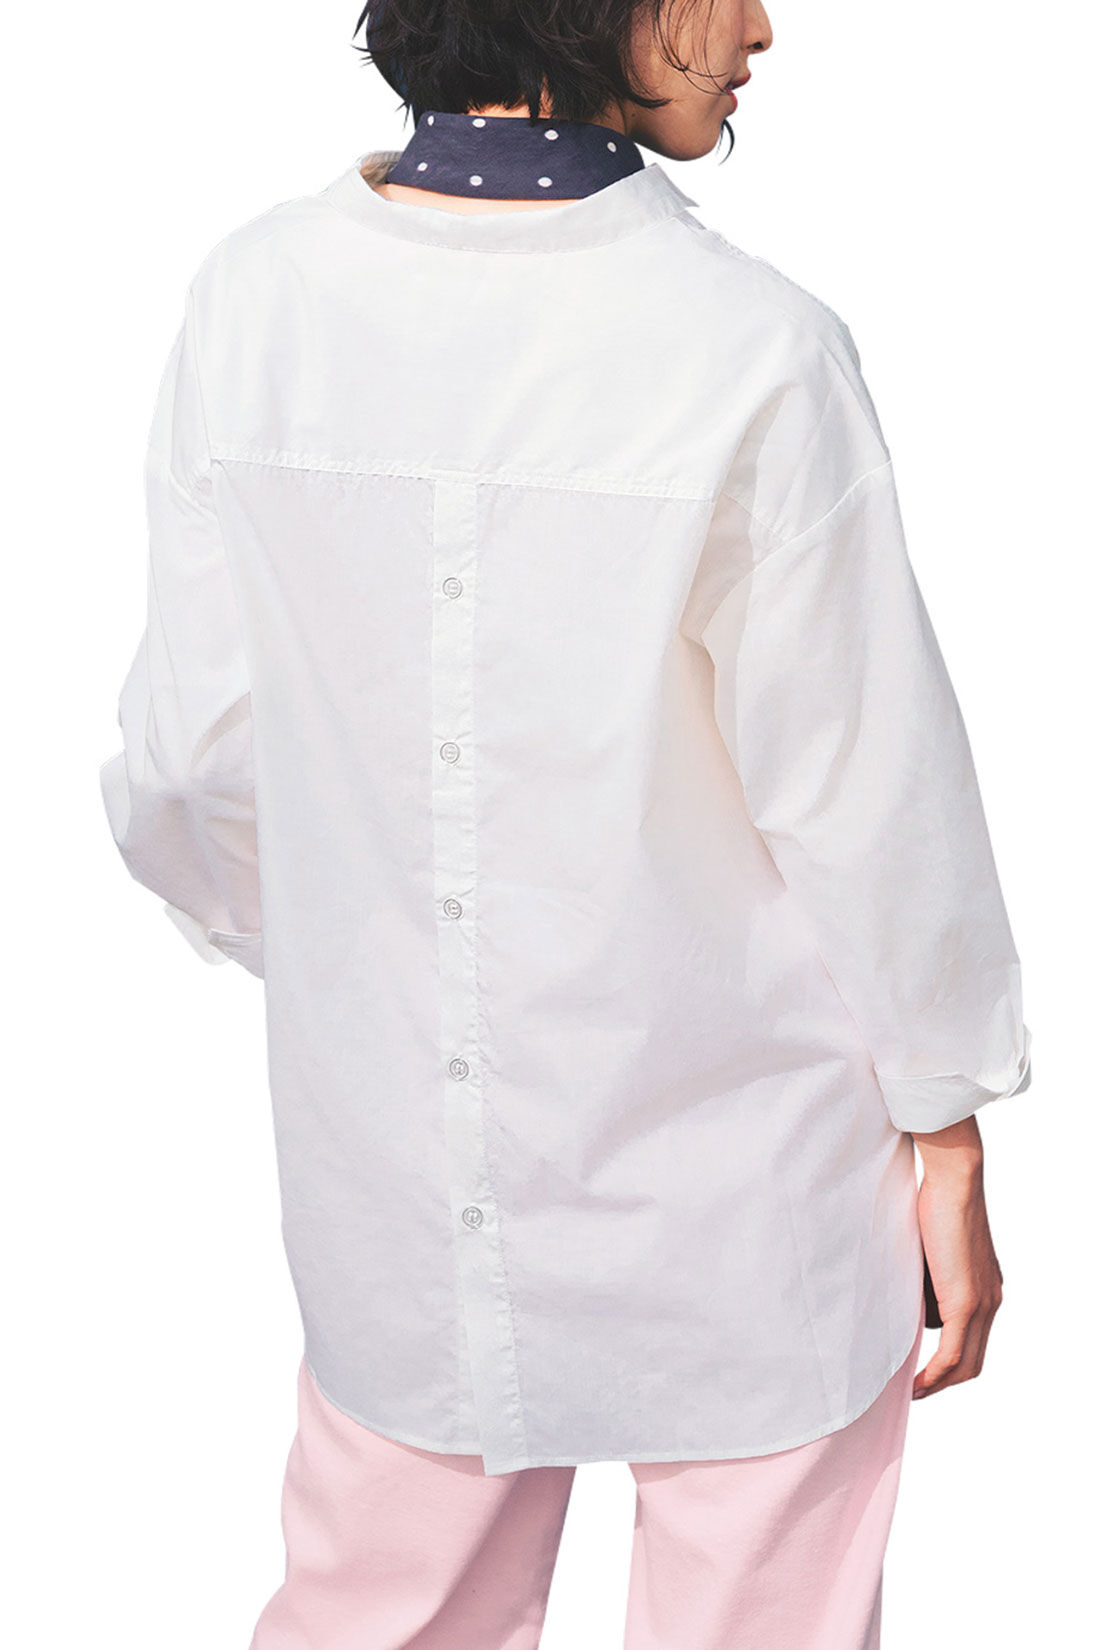 Live in  comfort|リブ イン コンフォート　さくっと着られてきちんと見える コットン混スキッパーシャツ〈ホワイト〉|きれいめだけどちょっぴりモードな隠し味。後ろに並んだボタンが大人かわいいアクセントに。